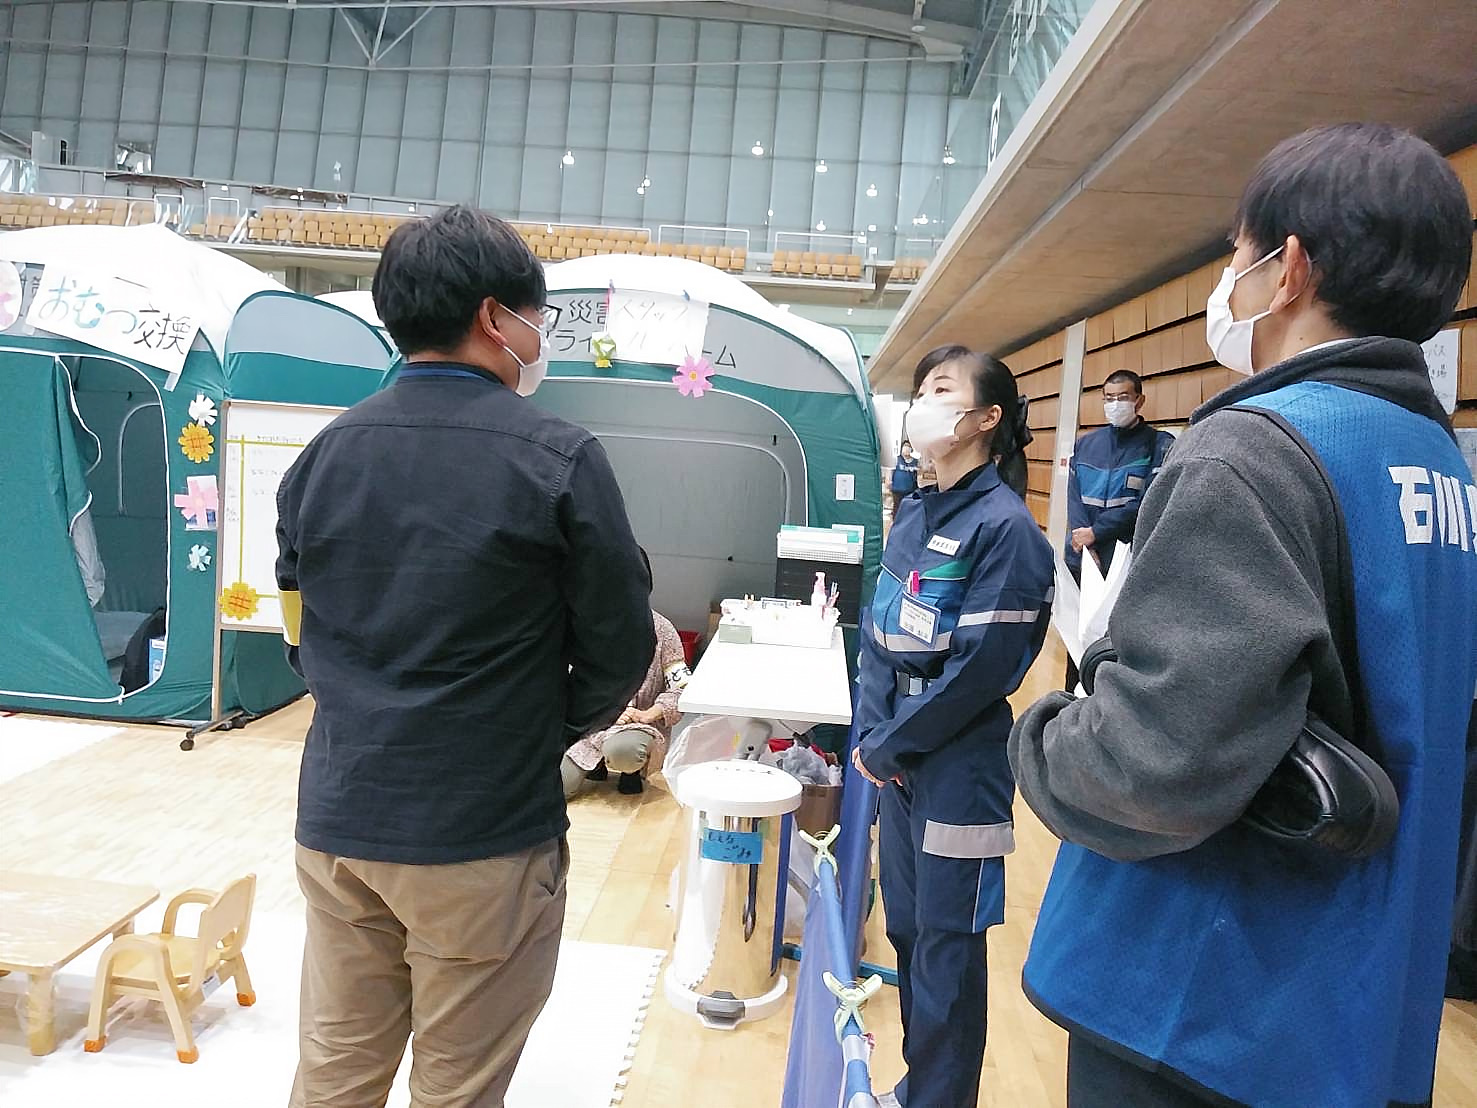 金沢市内の1.5次避難所の状況を視察し、こどもや男女共同参画の視点に立った避難所の運営などについて、関係団体と加藤大臣の意見交換の様子